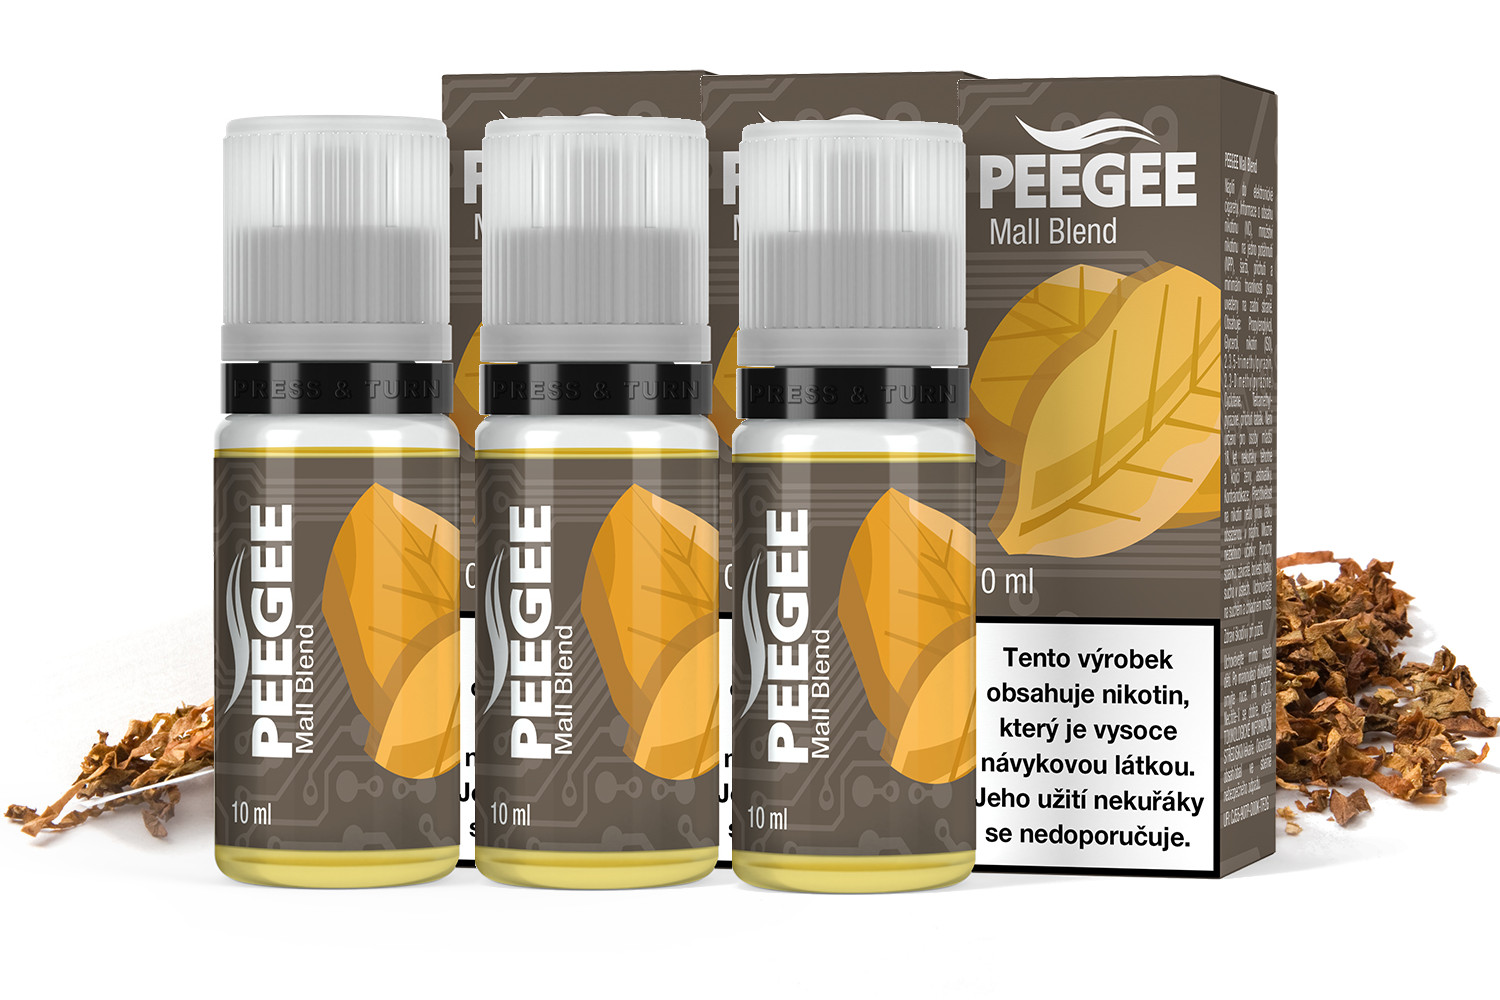 PEEGEE - Mall Blend 3x10ml Obsah nikotinu: 12mg